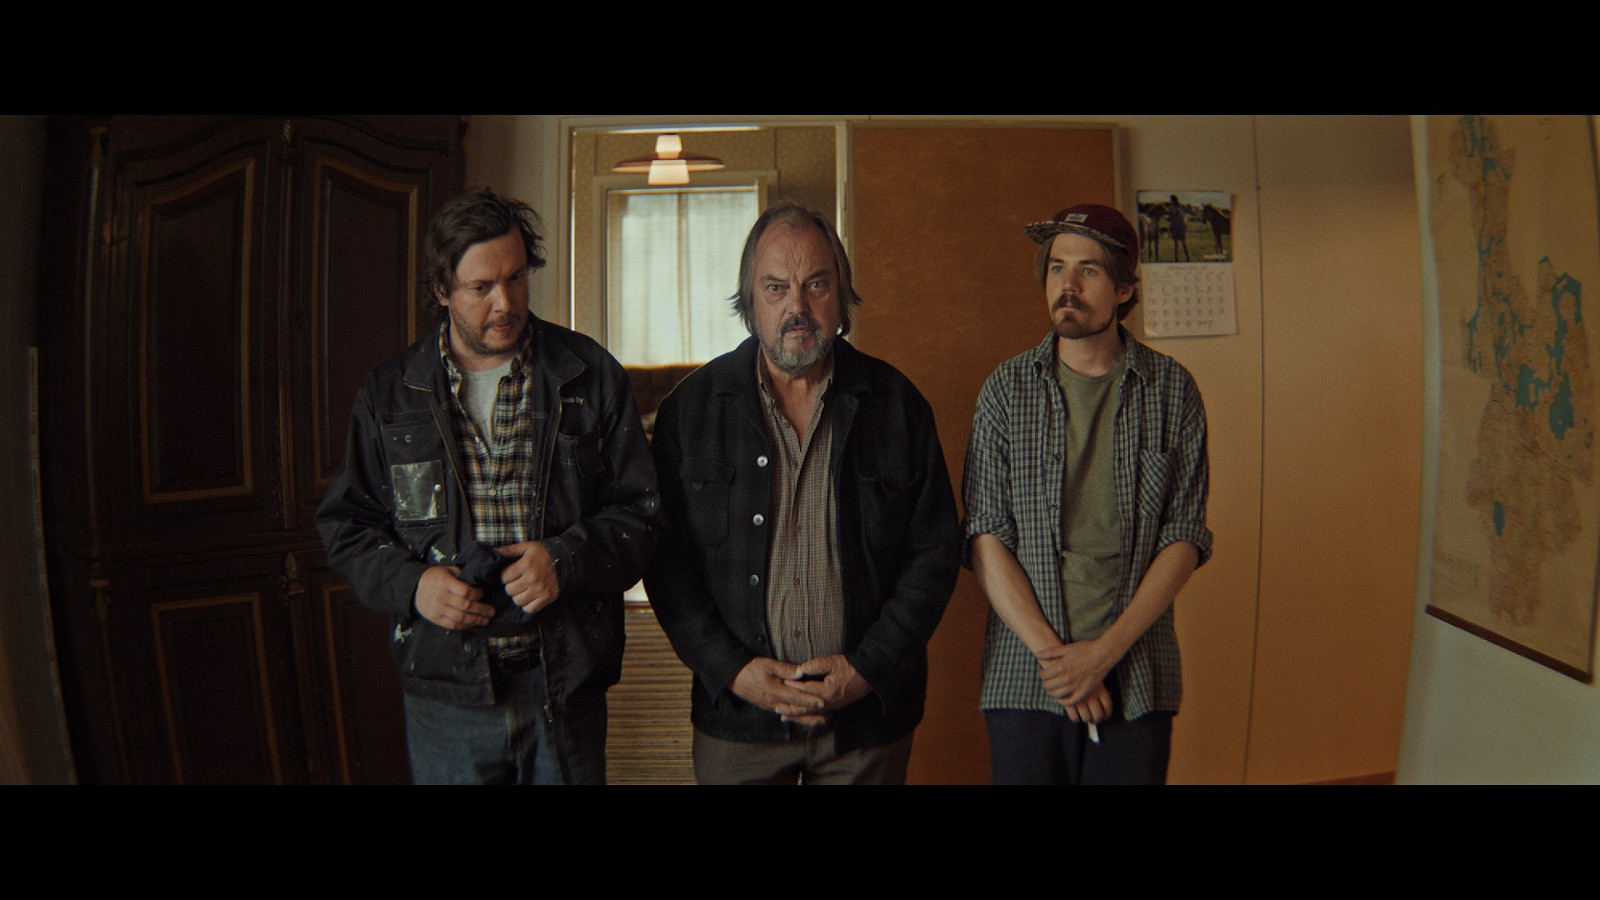 Kuvassa on kolme miesnäyttelijää seisomassa keskellä huonetta.  Kuvan sävy on tumma.